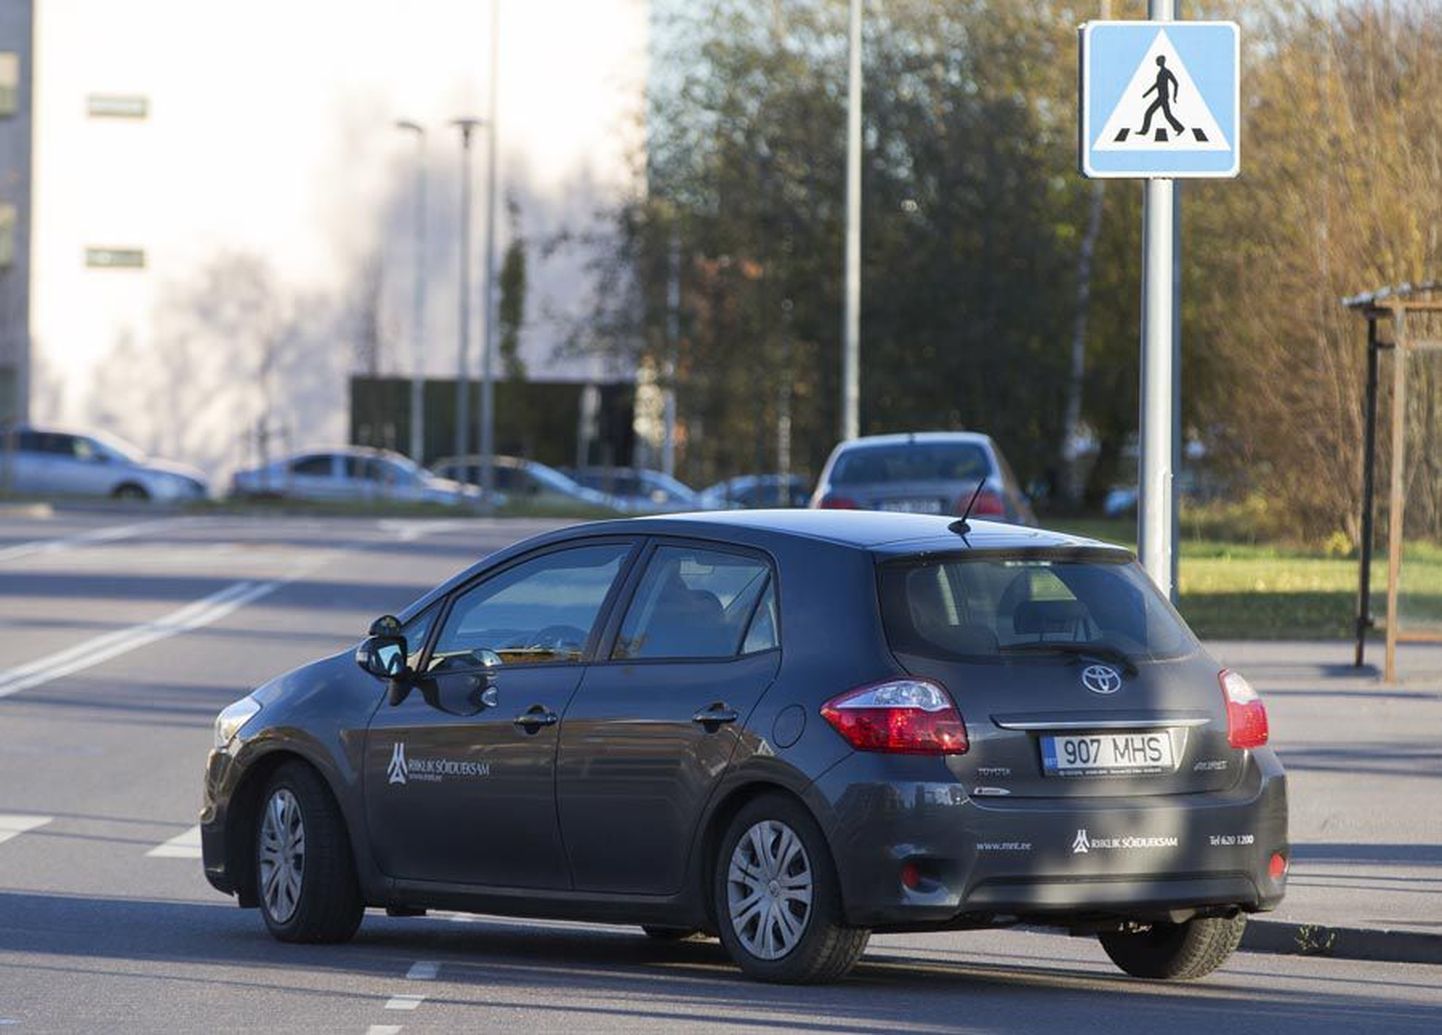 Maanteeamet on kinnitanud, et eksamiautosid 2018. aastal Viljandis sõitmas enam ei näe. Linnavalitsuse küsimuste peale saadetud vastus jättis aga otsad endiselt lahtiseks.